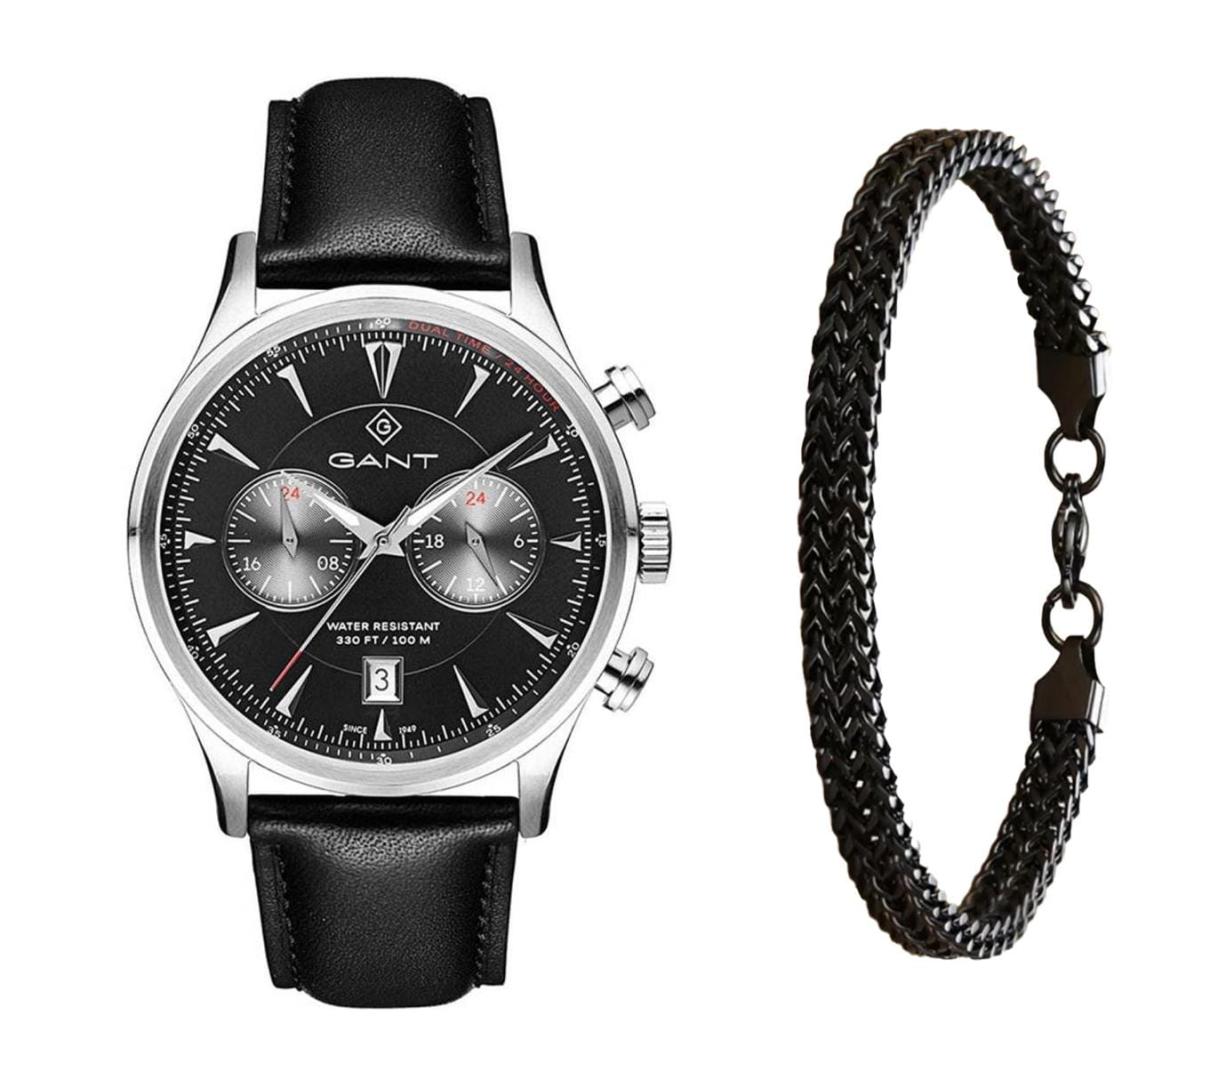 שעון יד אנלוגי לגבר gant g135004 גאנט עם צמיד חוליות שחור